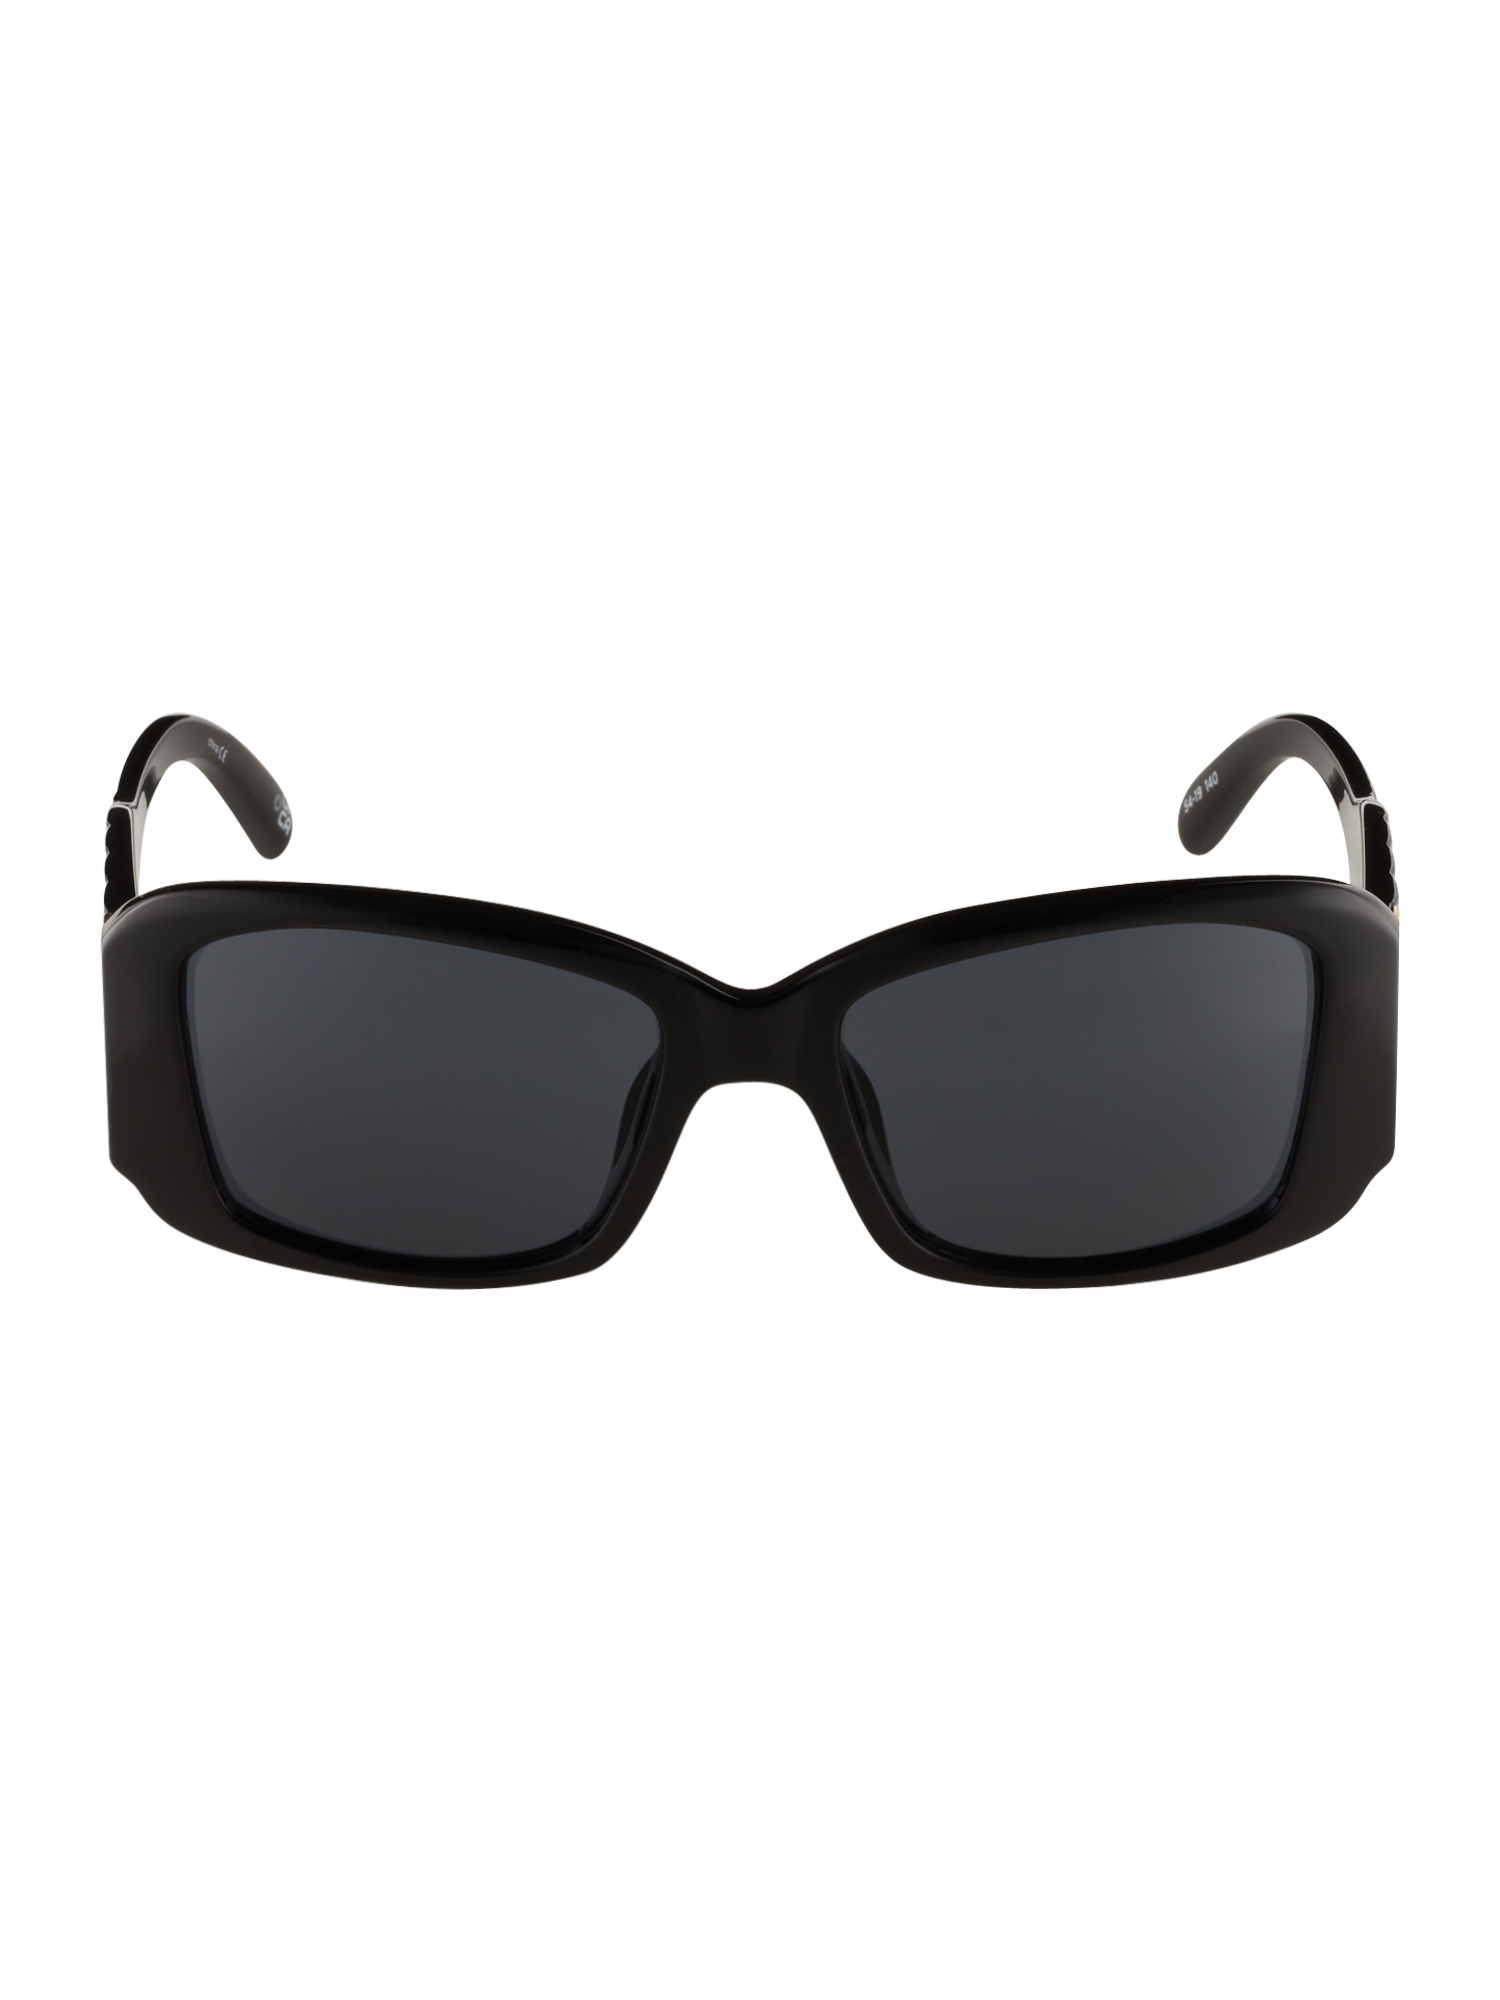 LE SPECS Okulary przeciwsłoneczne NOUVEAU RICHE w kolorze Czarnym 